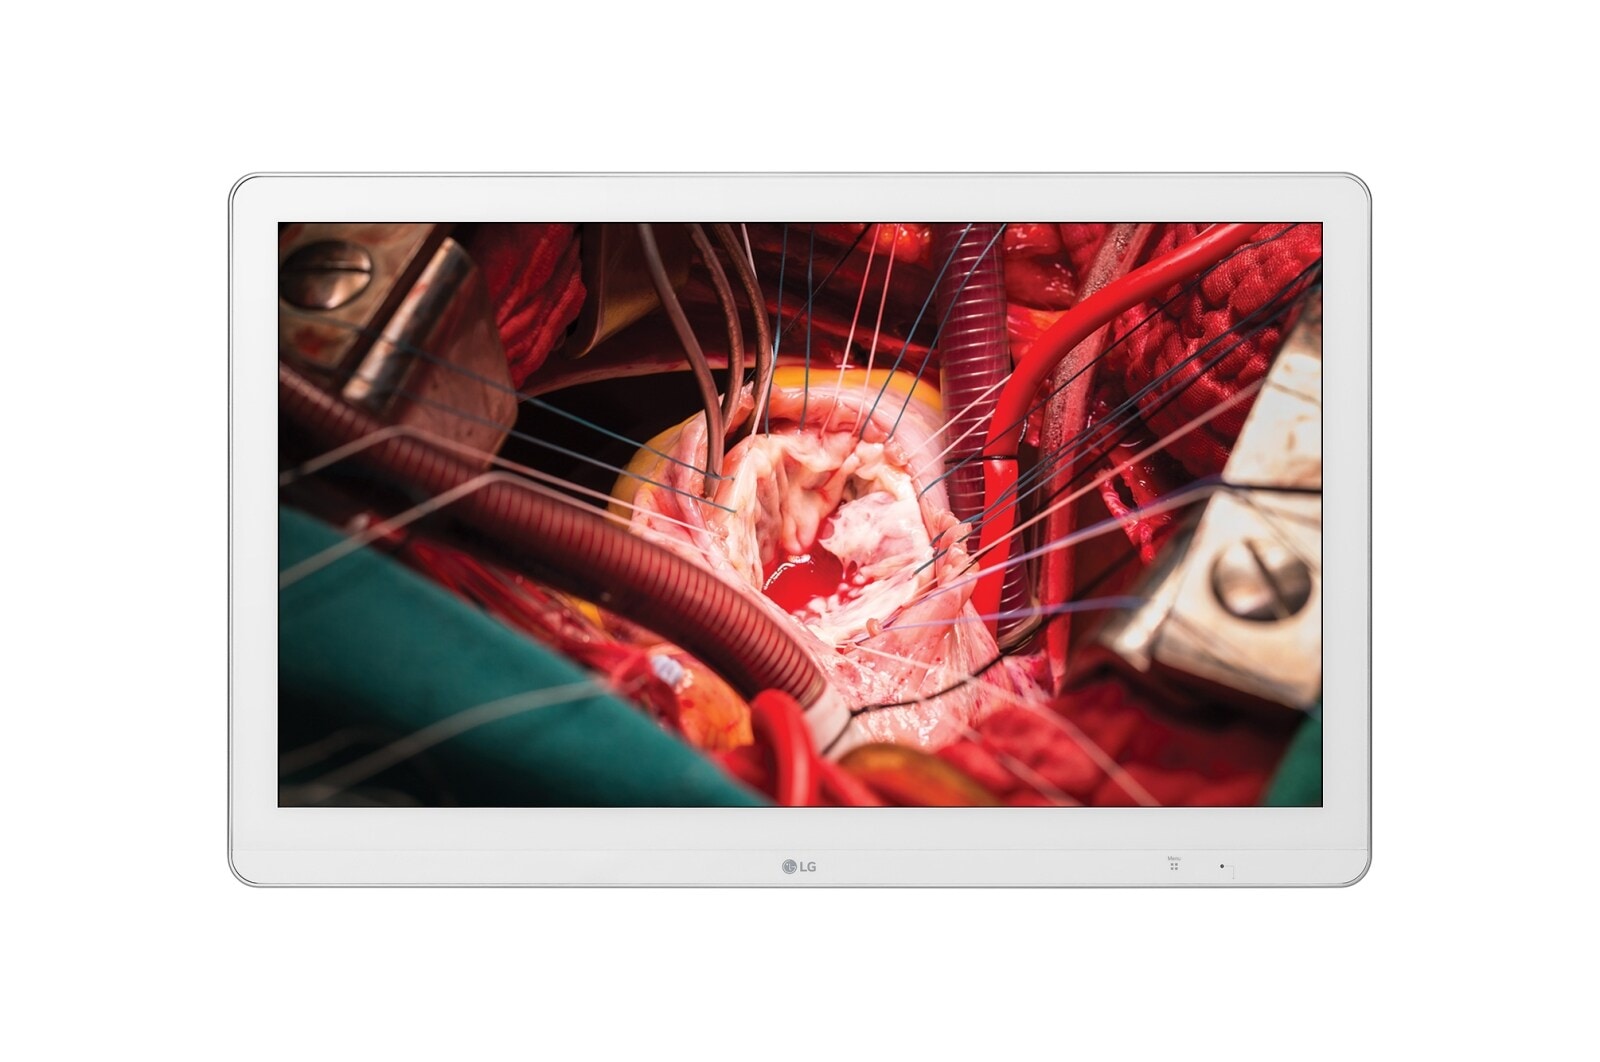 LG شاشة العمليات الجراحية العالية الدقة بالكامل من إل جي, 27HK510S-W